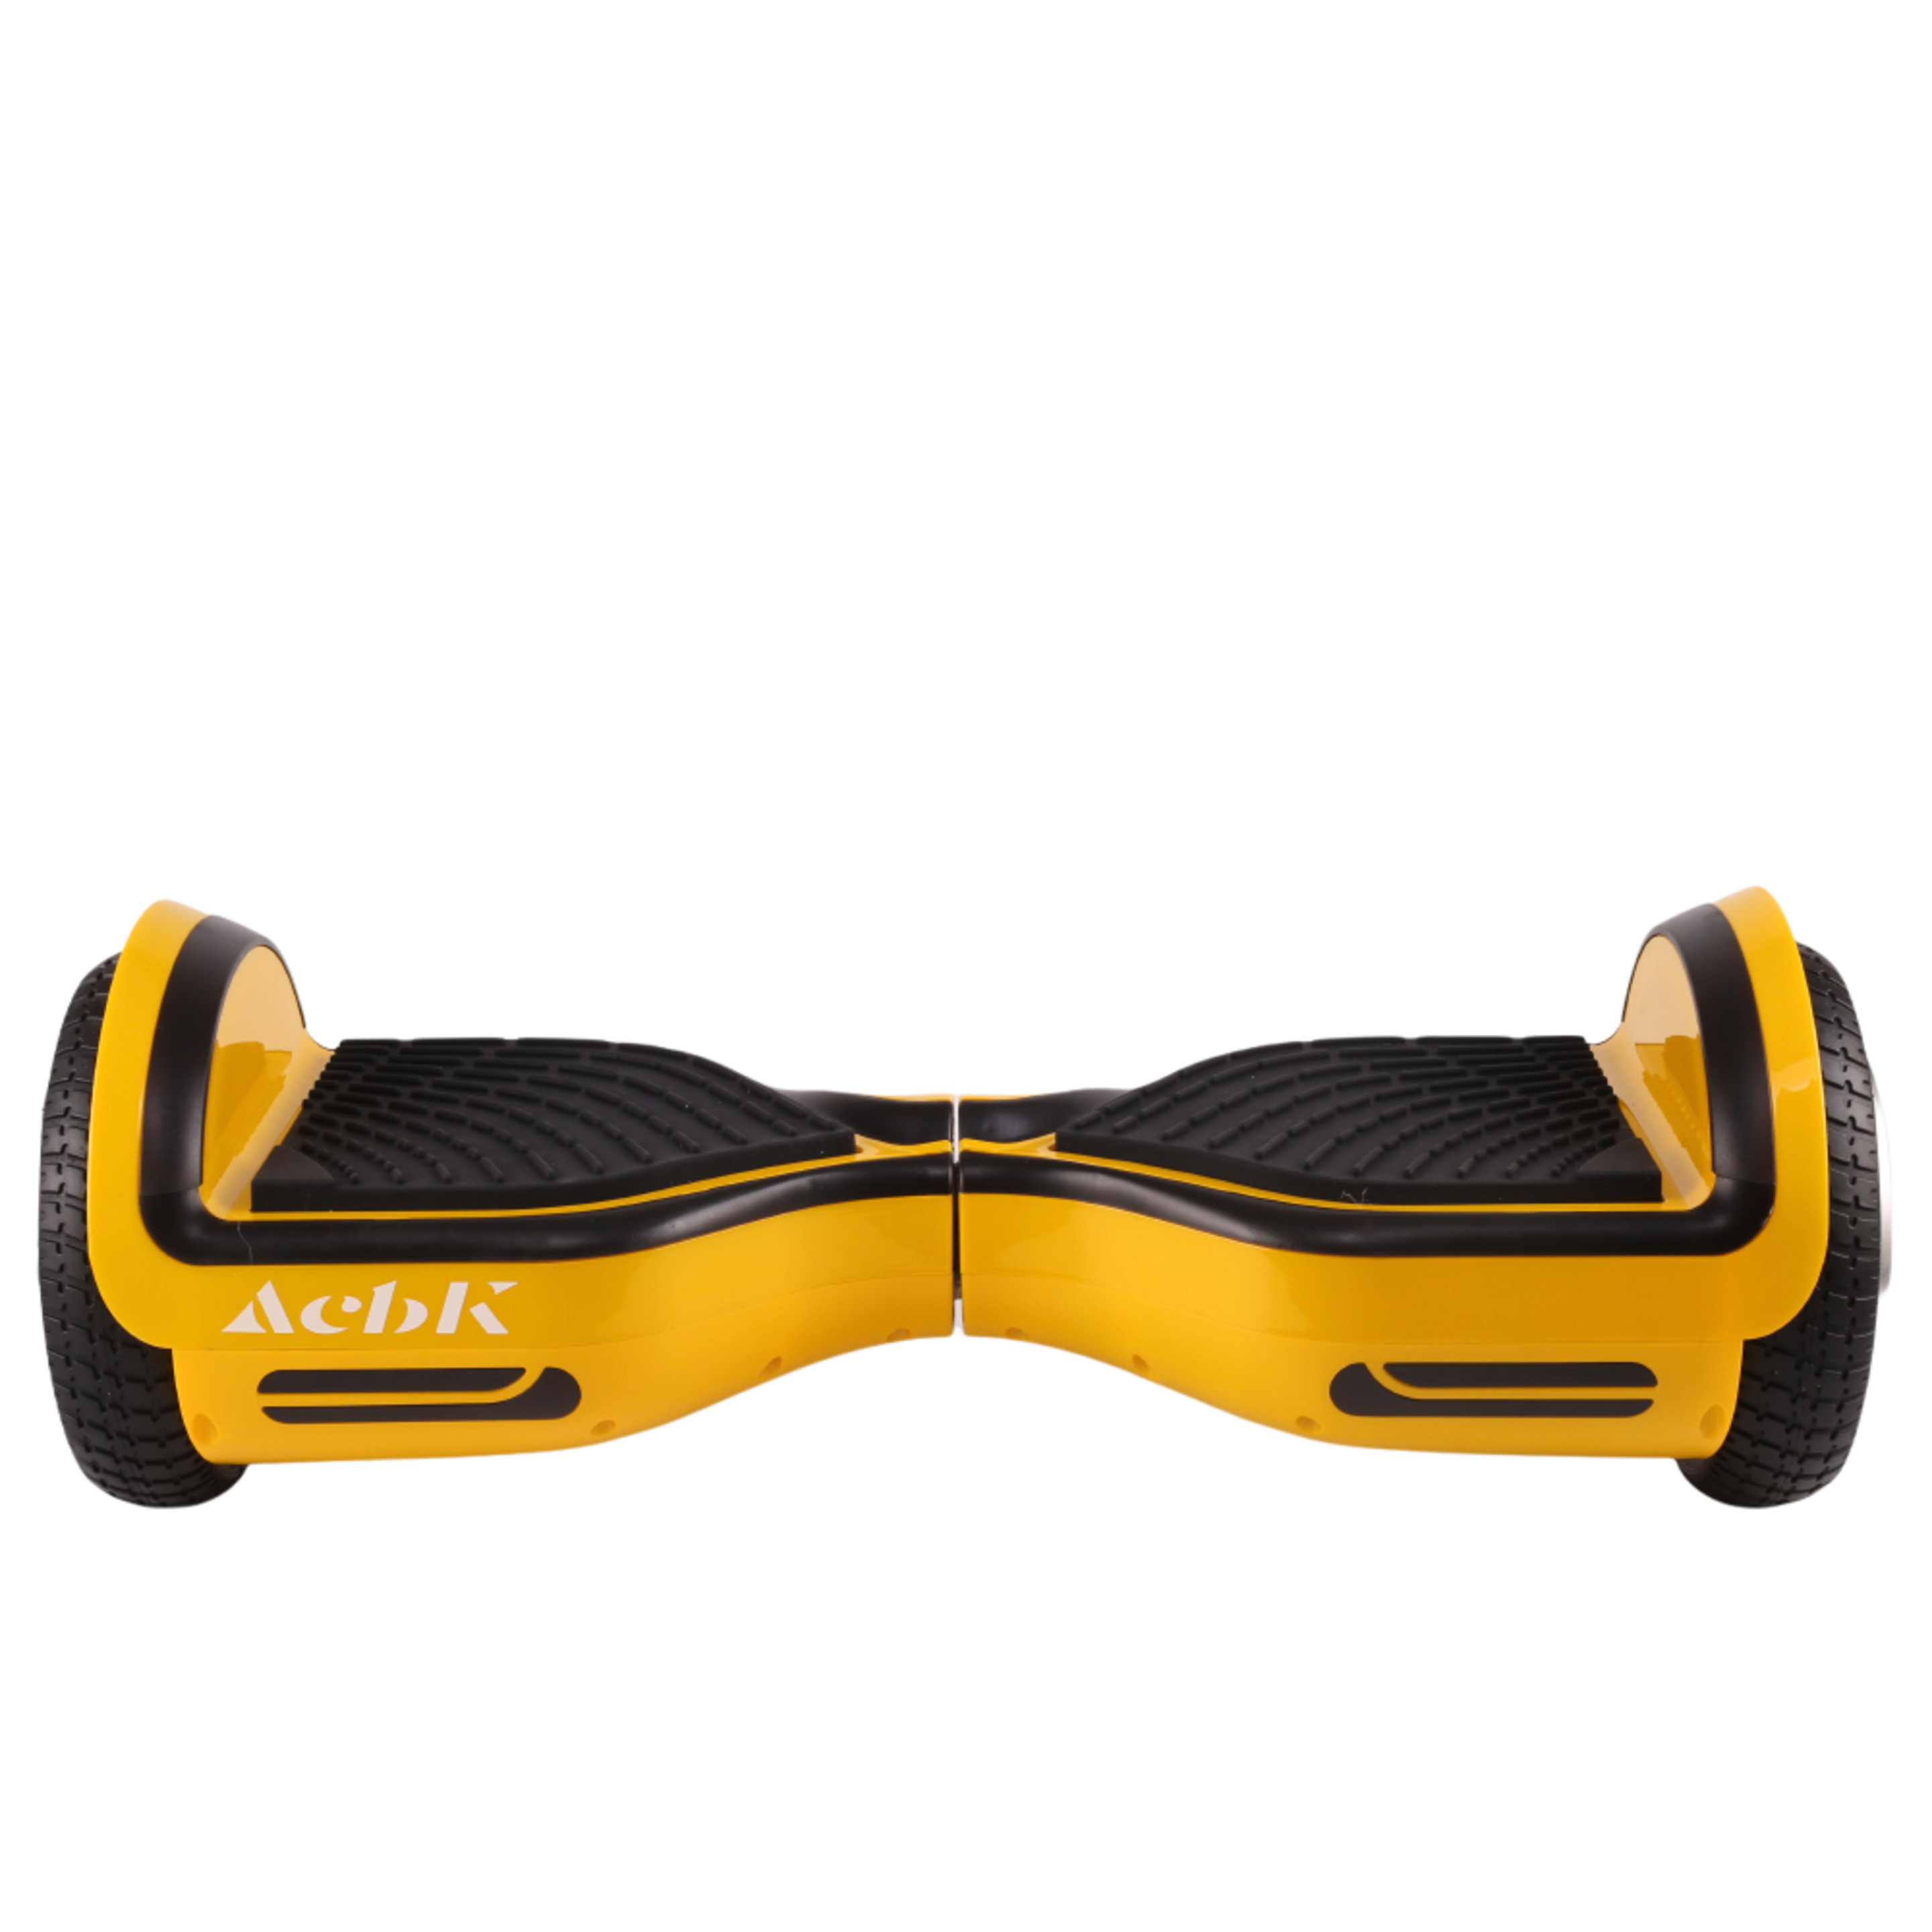 Acbk Hoverboard Conbluetooth Y Bolsa 250w - Amarillo - Hoverboard | Gtt  MKP